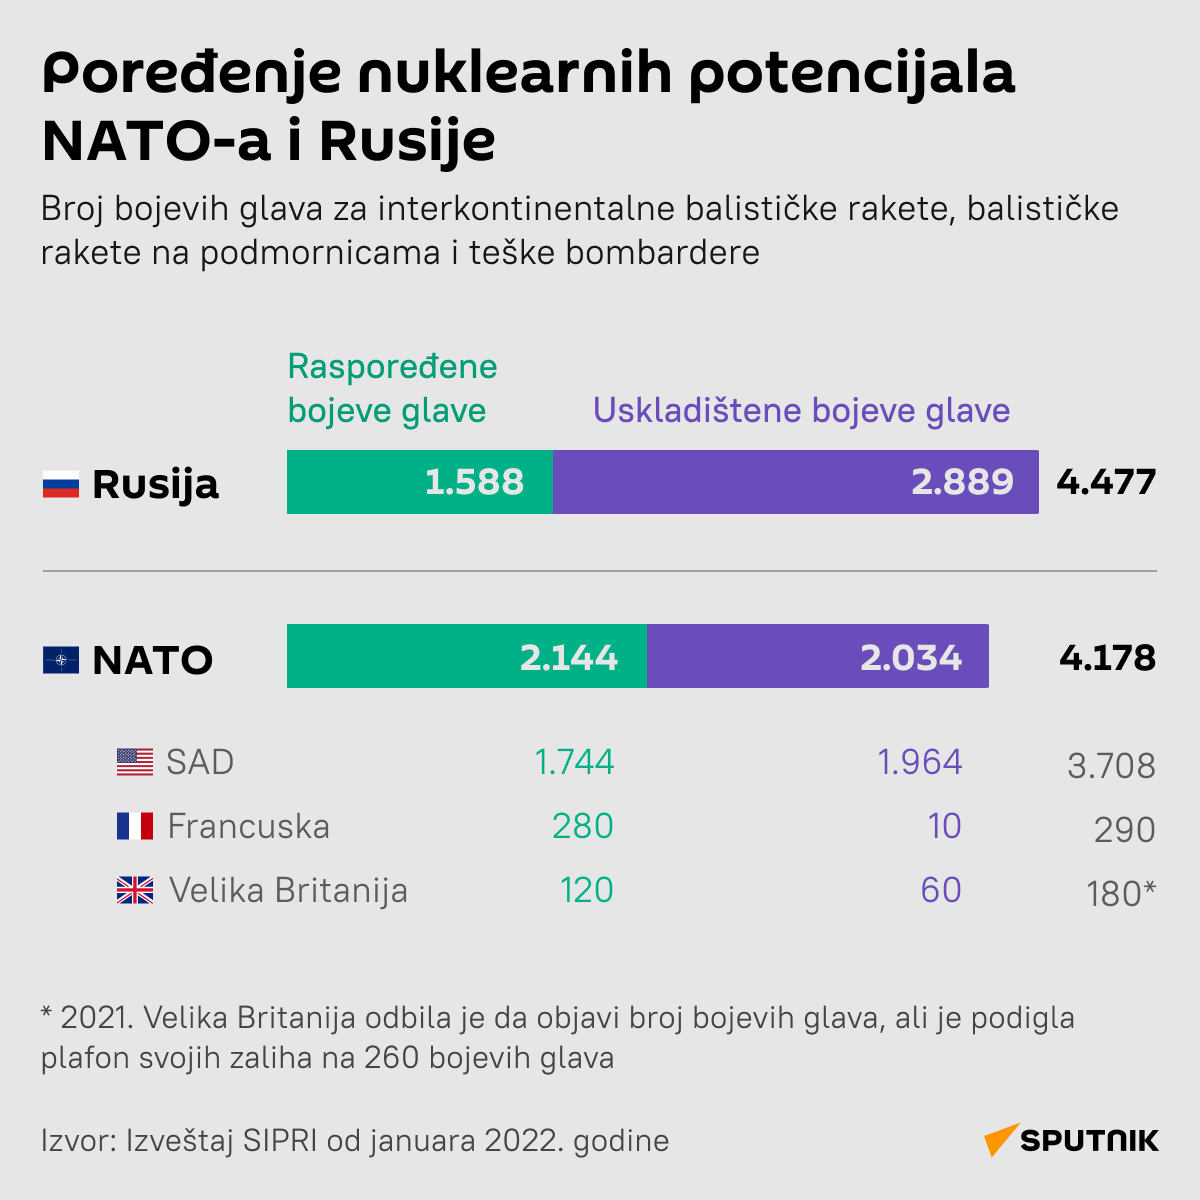 Poređenje nuklearnih potencijala NATO-a i Rusije LATINICA desk - Sputnik Srbija